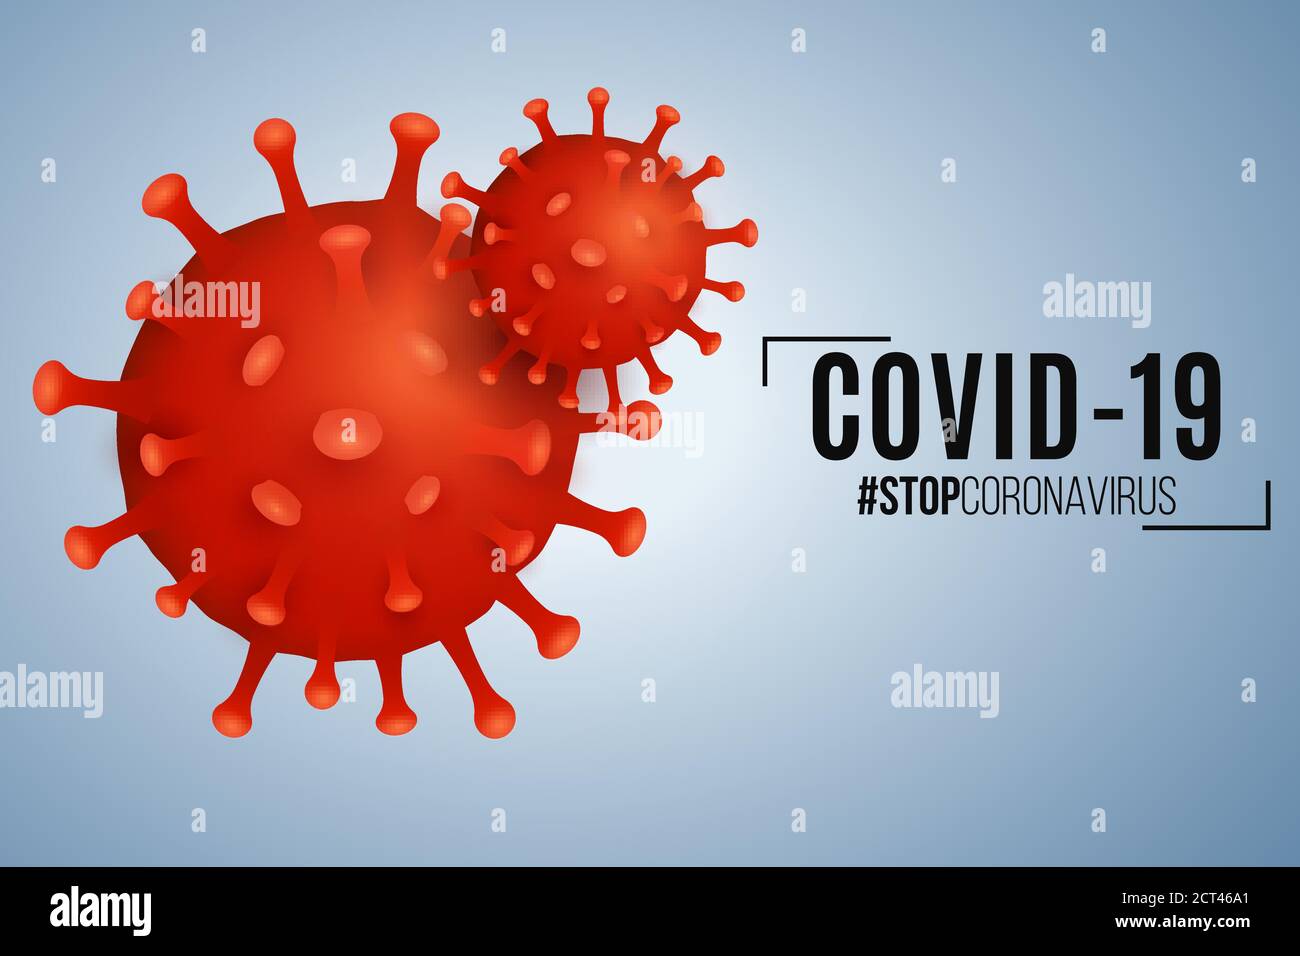 Coronavirus de l'organisme pathogène sur fond bleu clair. Maladie infectieuse épidémique Covid-19. Infection cellulaire. Arrière-plan ou couverture pour votre medic Illustration de Vecteur